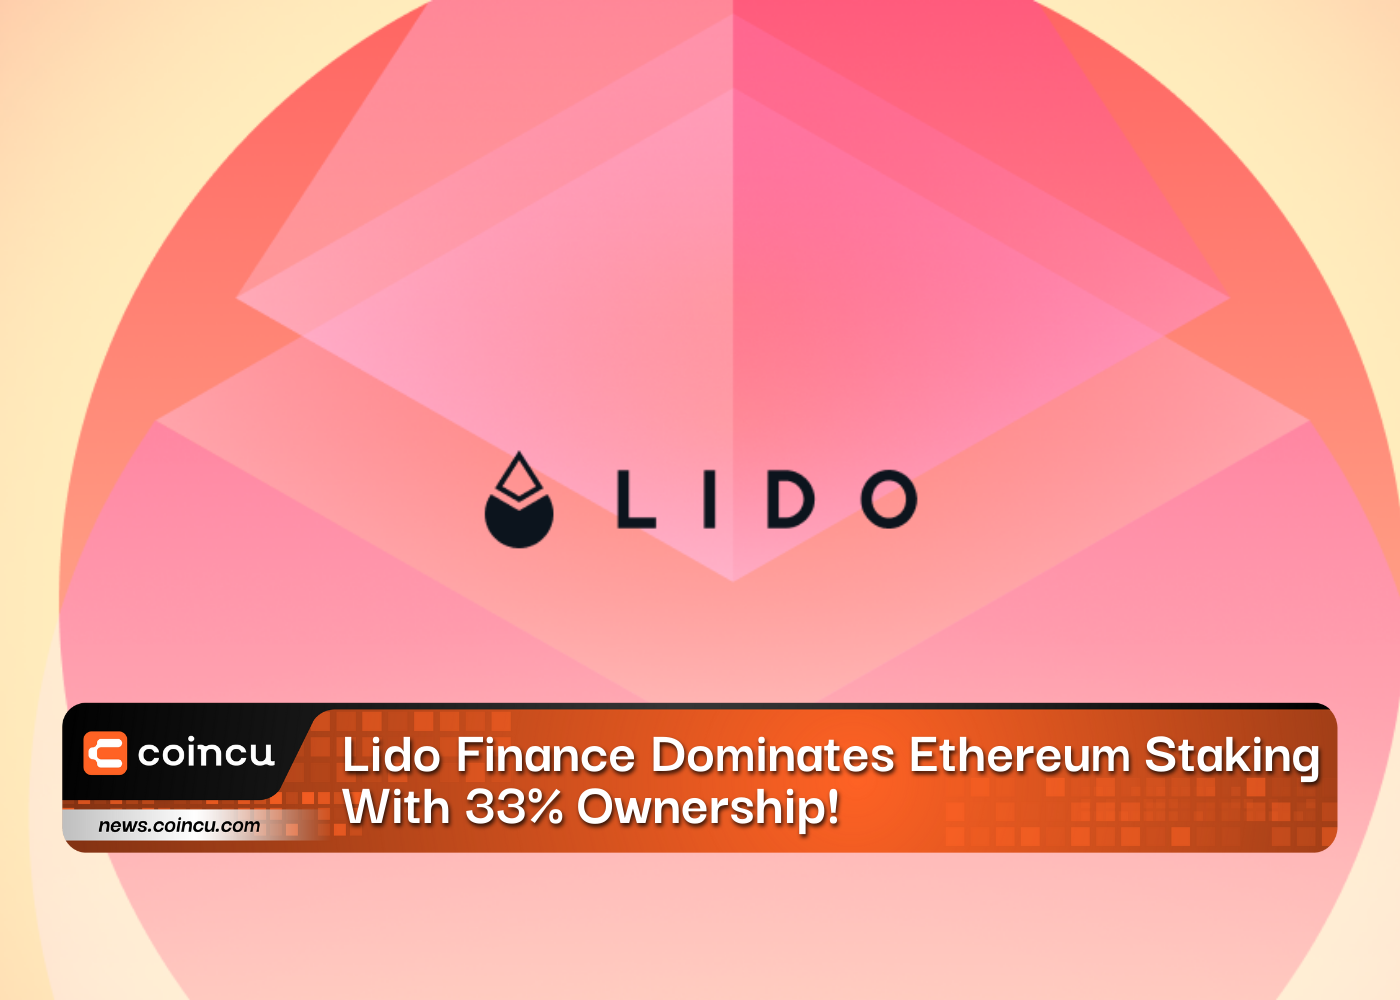 Lido Financeがイーサリアムステーキングを独占